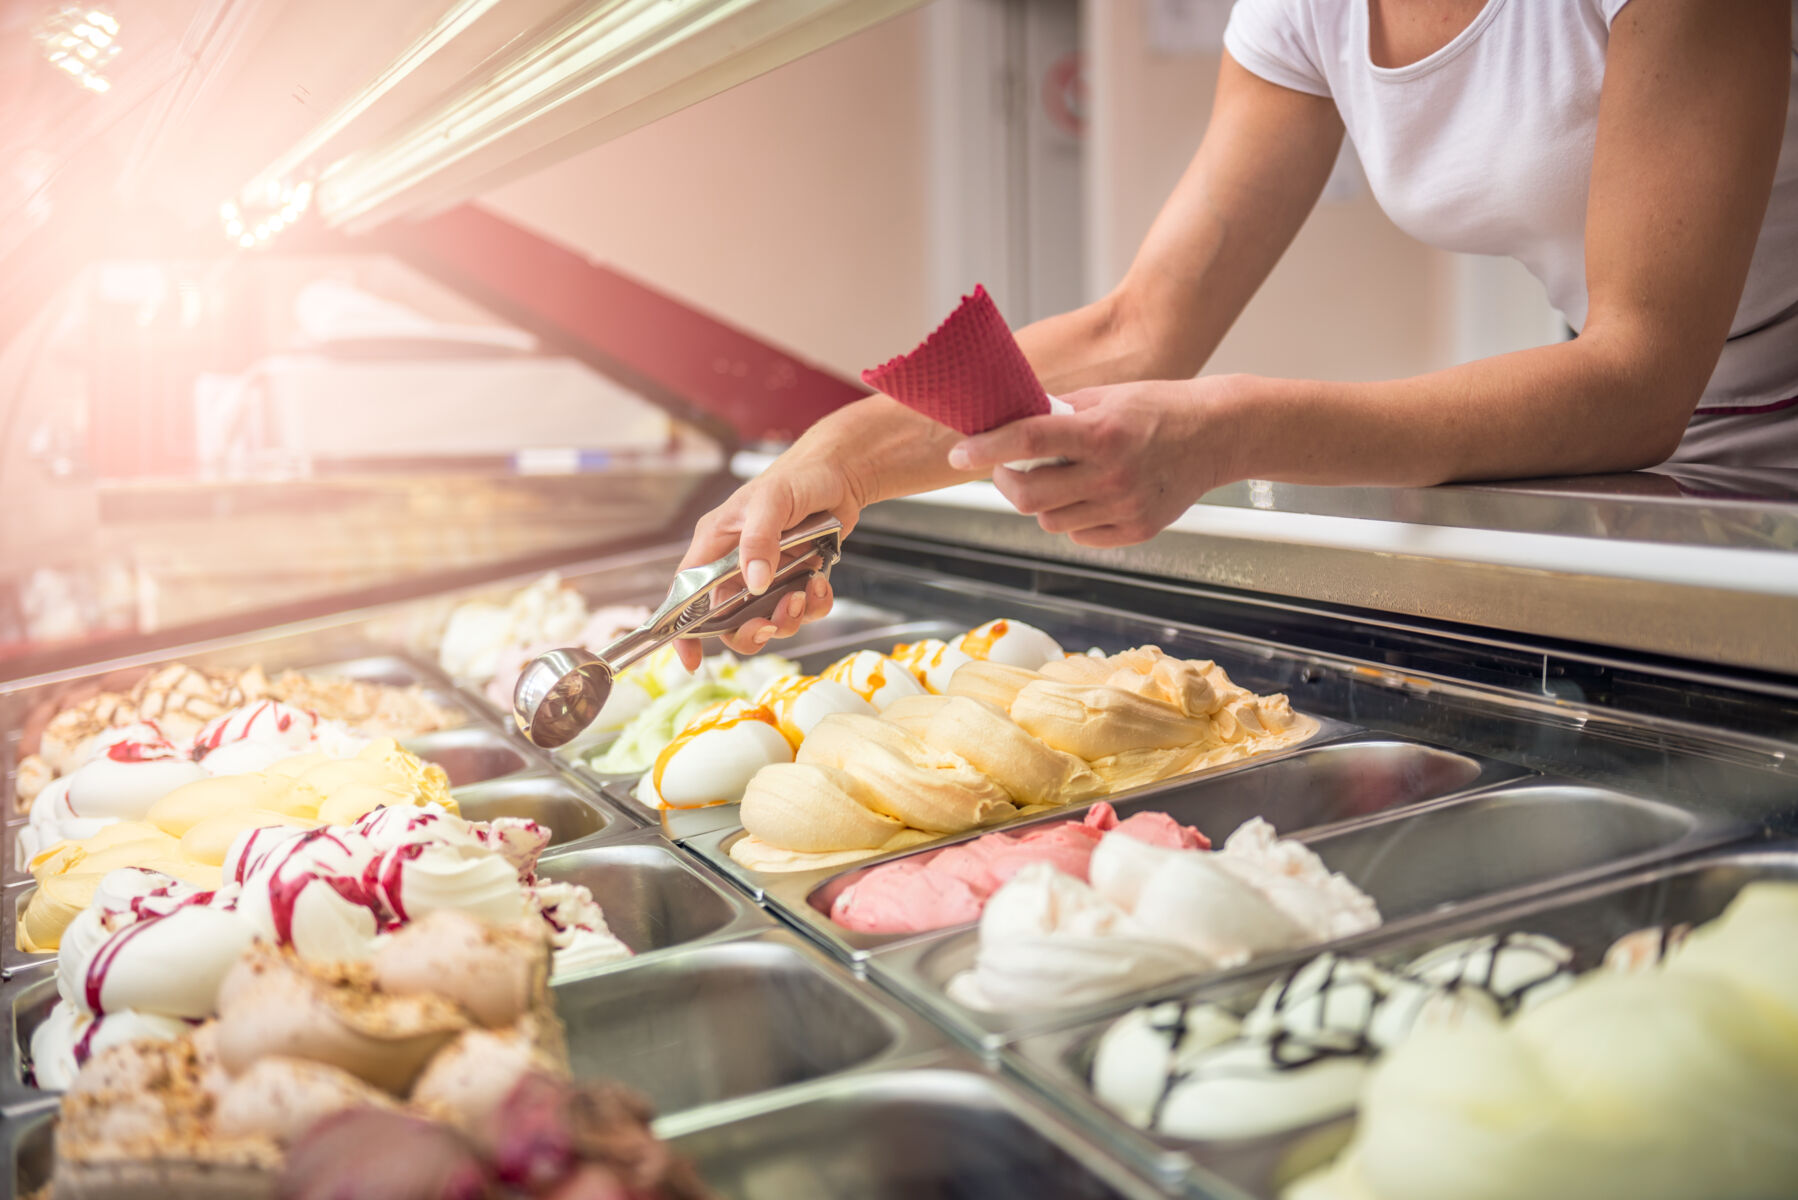 Employee scooping ice cream